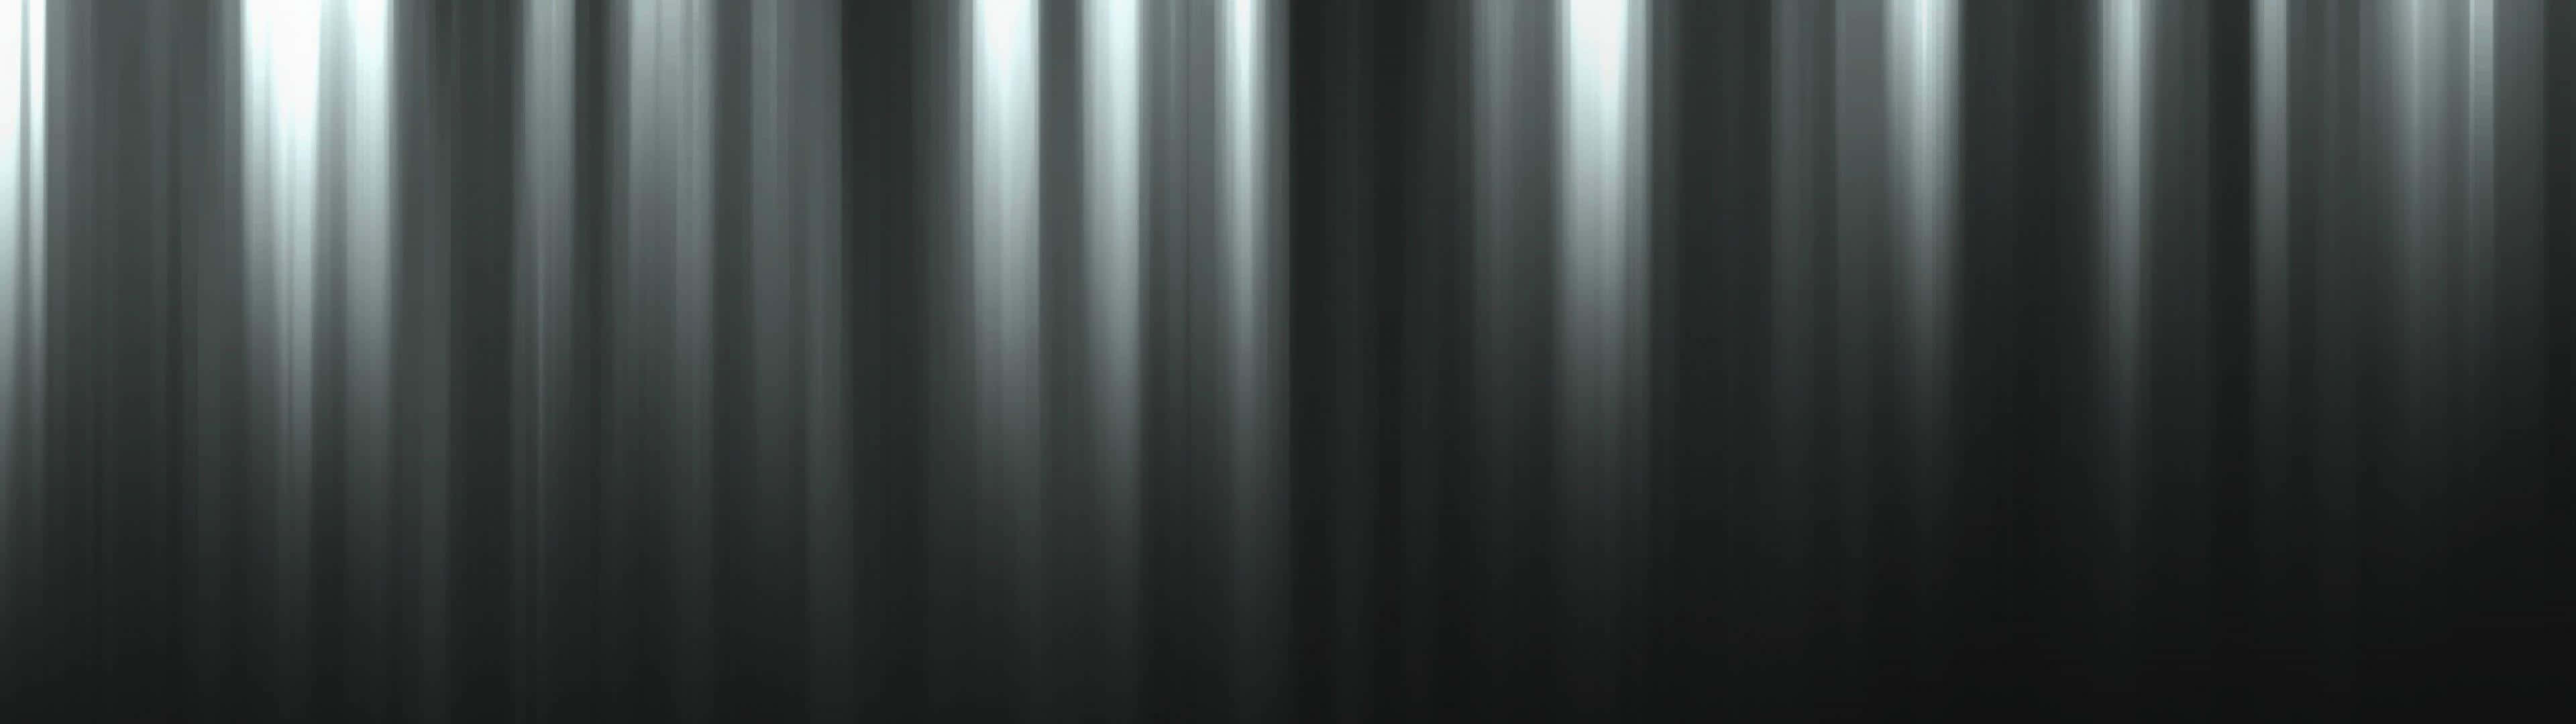 Einschwarz-weißer Hintergrund Mit Leichten Lichtstreifen. Wallpaper